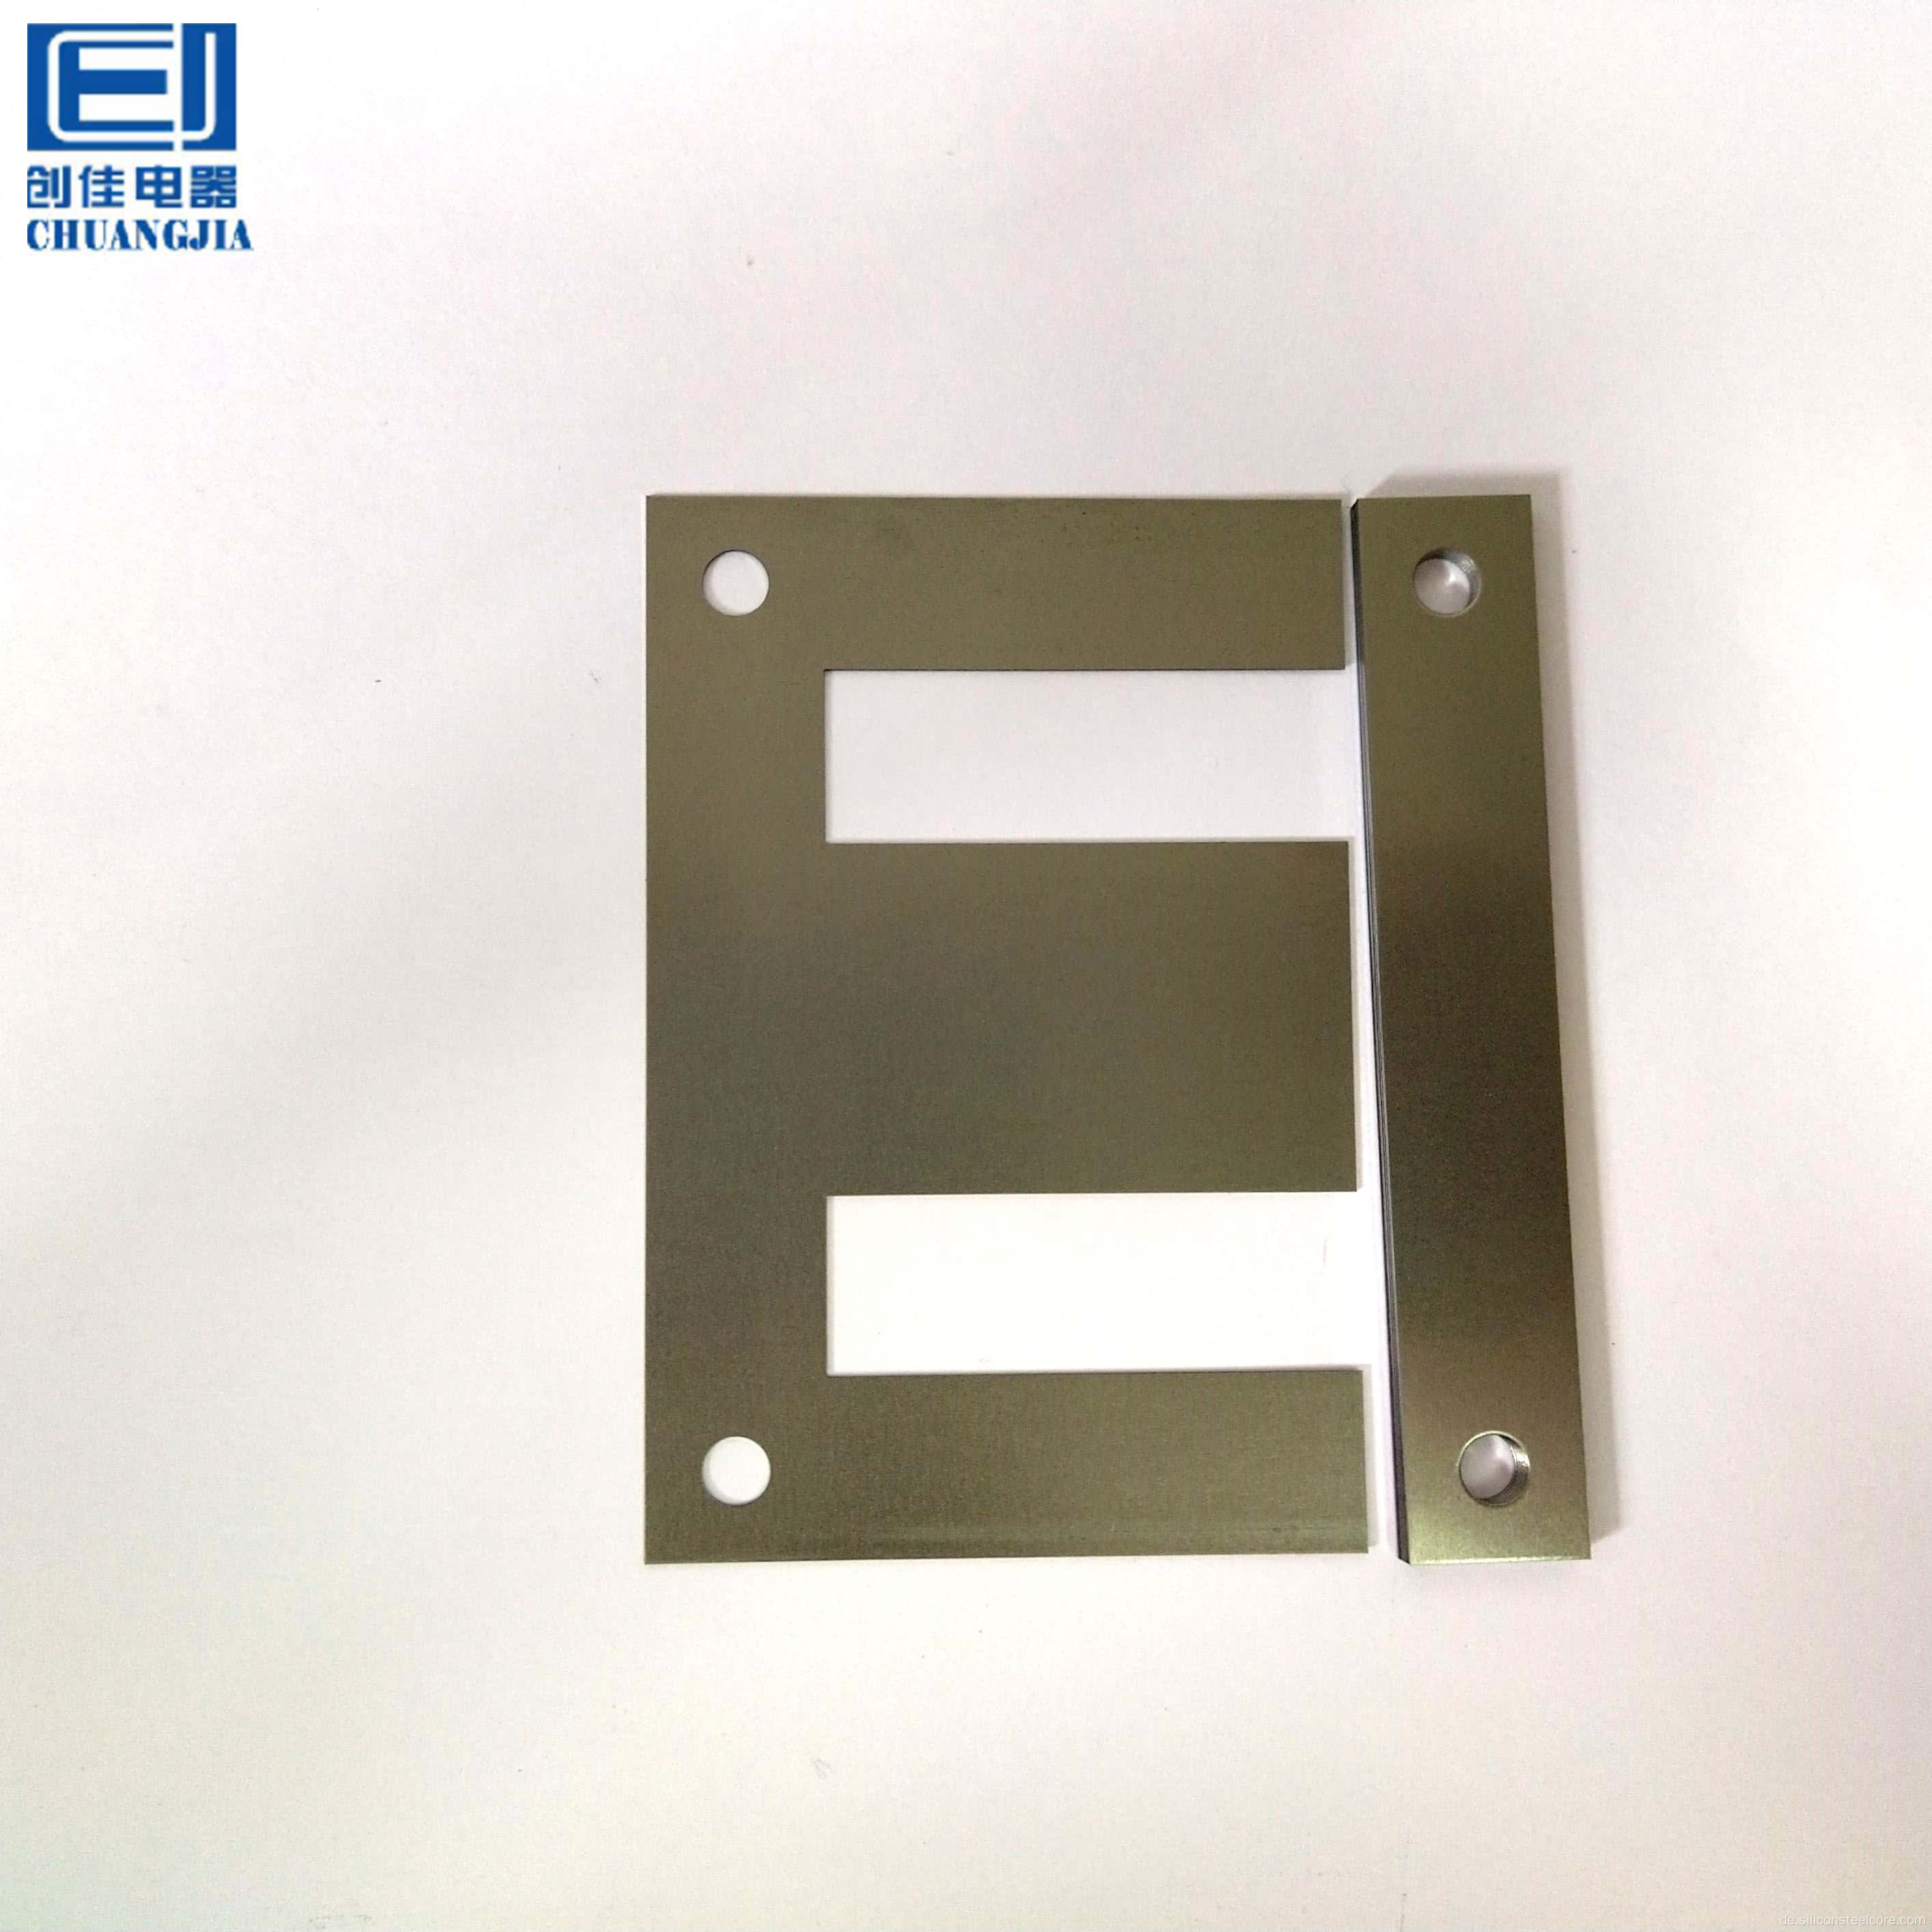 Transformatorlaminierung/EI-Laminierungskern EI 40-200/Siliziumstahlspulen für Transformator